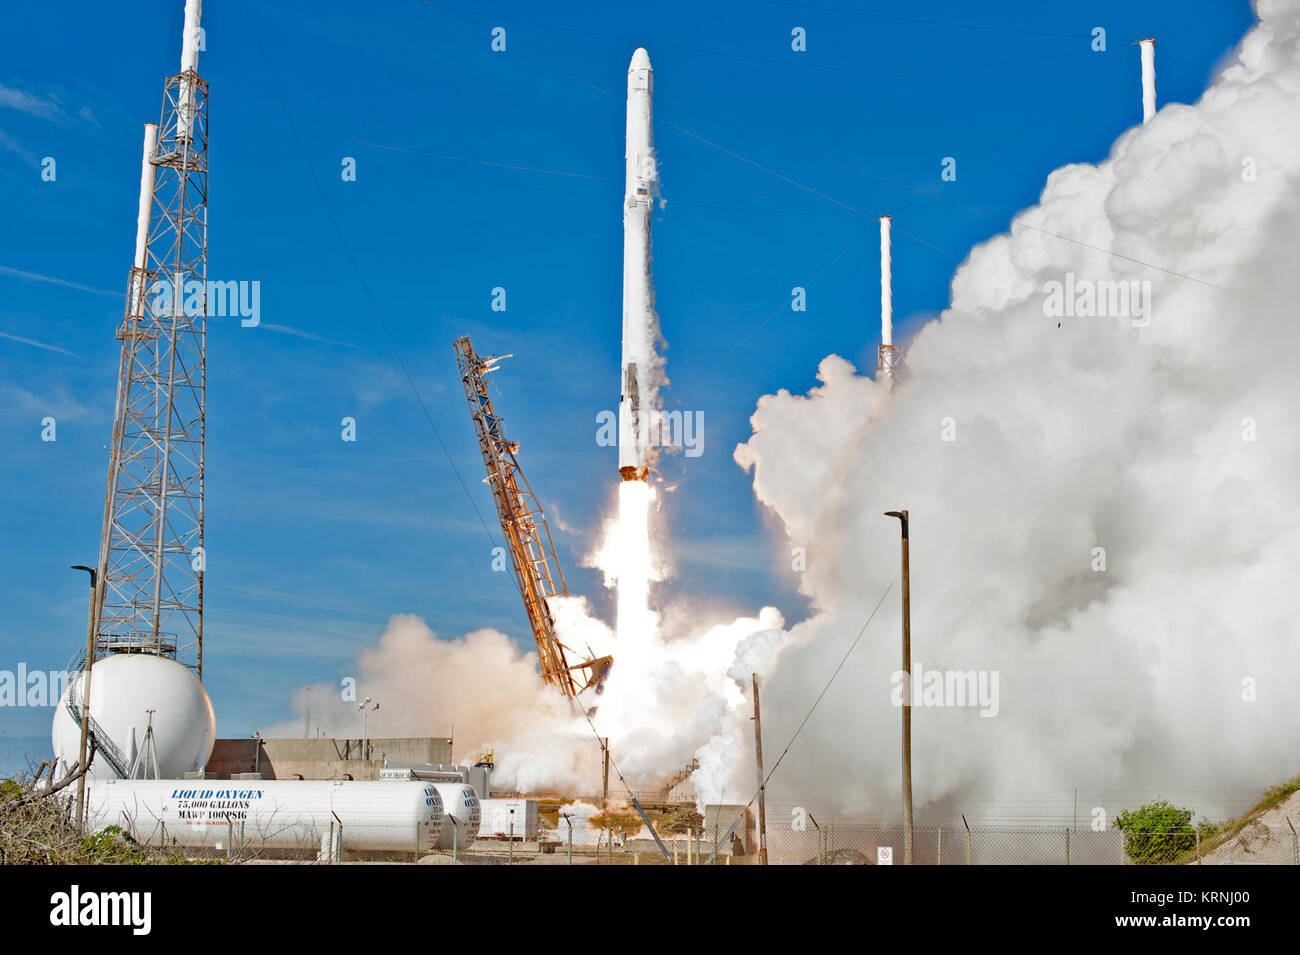 Las dos etapas, vehículo de lanzamiento Falcon 9 se levanta el complejo de lanzamiento espacial 40 de la Estación Cañaveral de la Fuerza Aérea lleva el dragón nave de reabastecimiento de la Estación Espacial Internacional. Despegue fue a las 10:36 a.m. EST. En su 13ª comercial servicios misión de reabastecimiento de la Estación Espacial Internacional, Dragon aportarán suministros, equipos y nuevos experimentos científicos de la investigación tecnológica. El SpaceX Dragon spacecraft entregará aproximadamente 4.800 libras de carga y material para apoyar investigaciones científicas a bordo de la estación espacial. Cek-20171215-PH AWG03 0017 (25209130178) Foto de stock